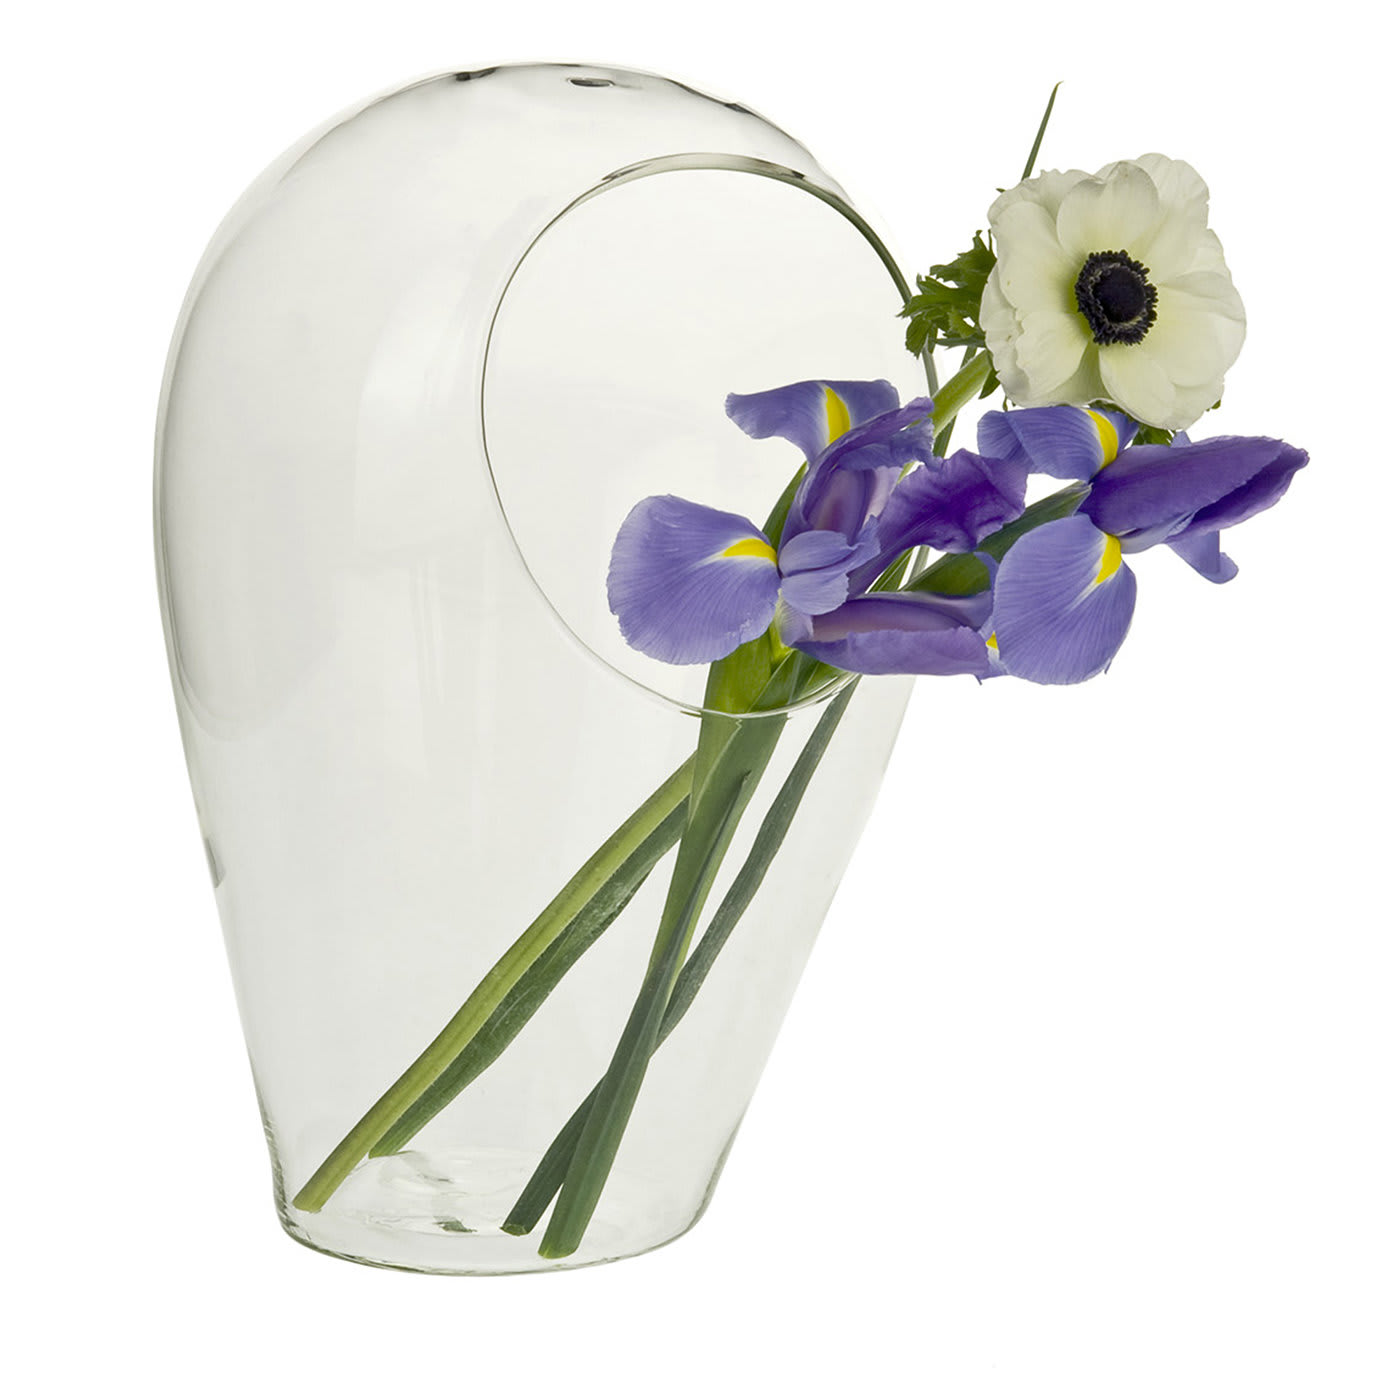 Palomar Small Vase by Fabio Cocchi and Luigi Rotta - Dovetusai